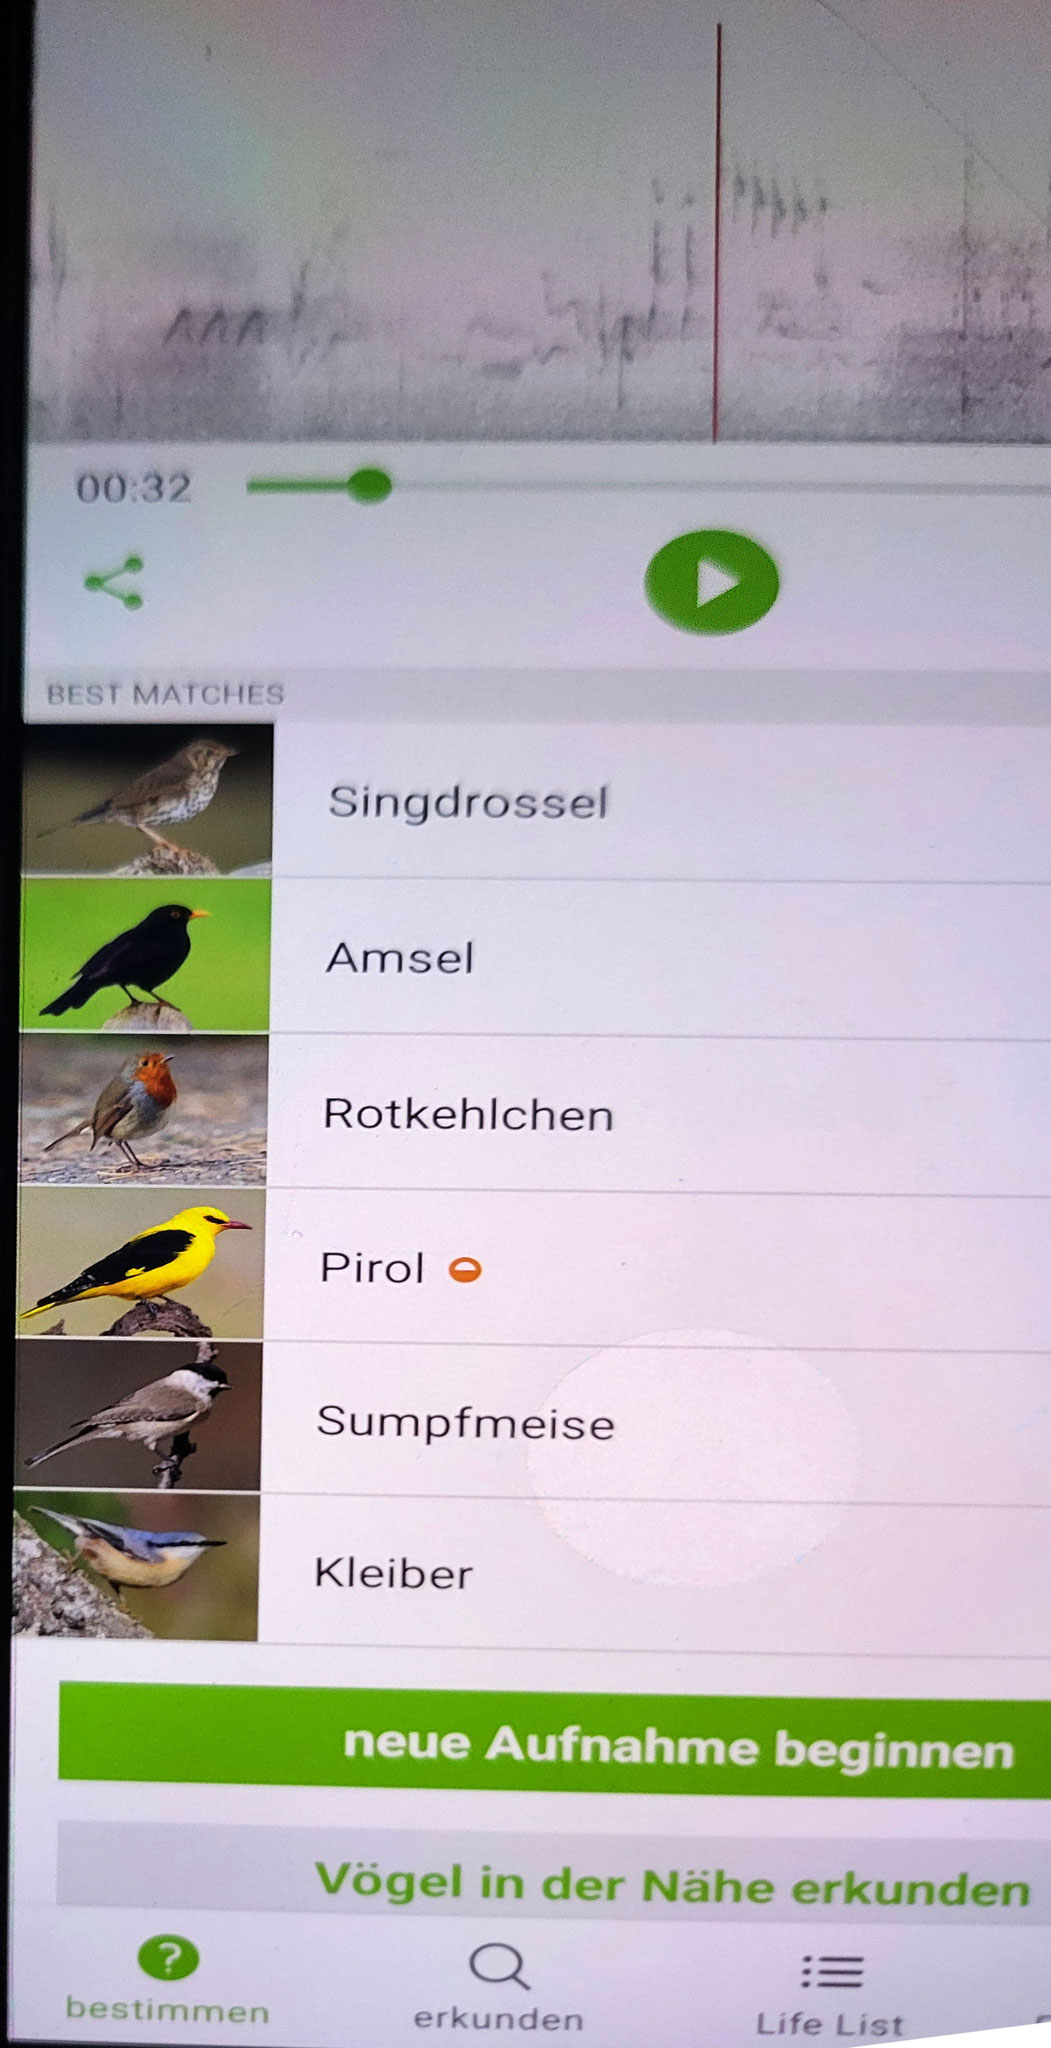 Rafael hat Vogelstimmen von der KI-App Merlin bestimmen lassen. In nur 32 sec hat Merlin 6 Vogelarten bestimmt